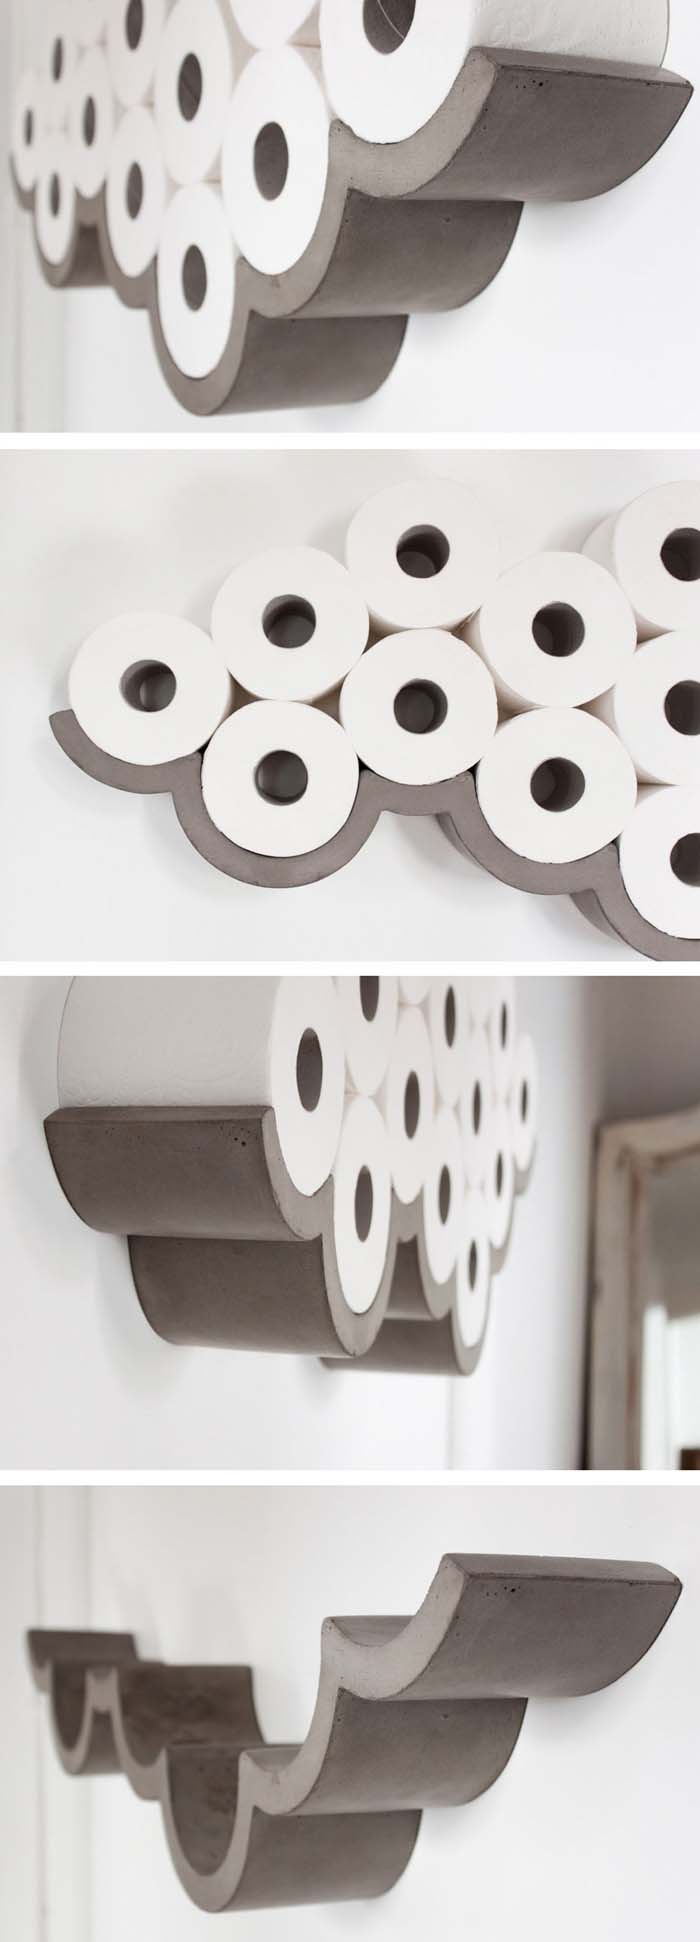 Wall Art Toilet Paper Cloud Shelf #diy #toliet #holder #decorhomeideas